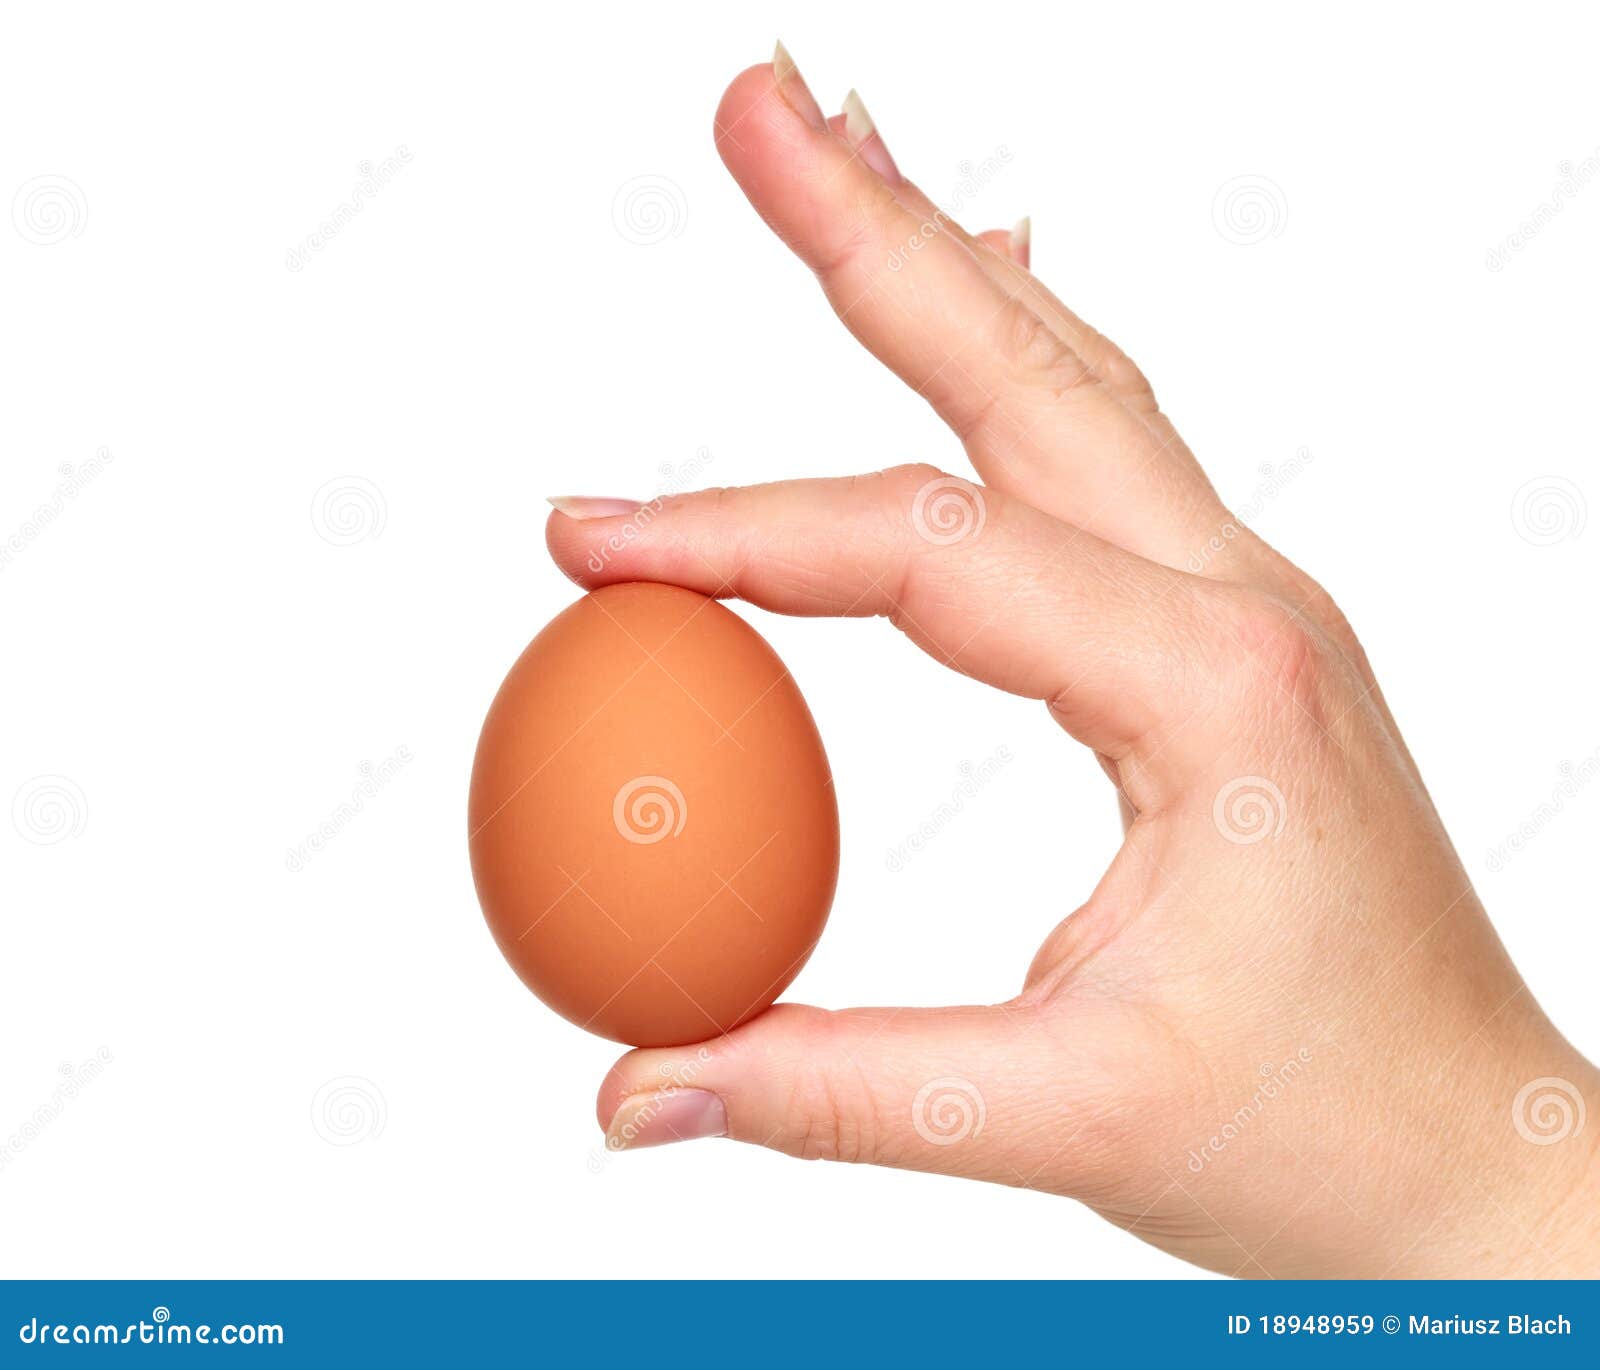 Ножки яички. Девушка держит в руке яйцо картинки. Эскиз мошонка в руке. Взять на руки яйцо картинки. Мужик держит два яйца в руке.